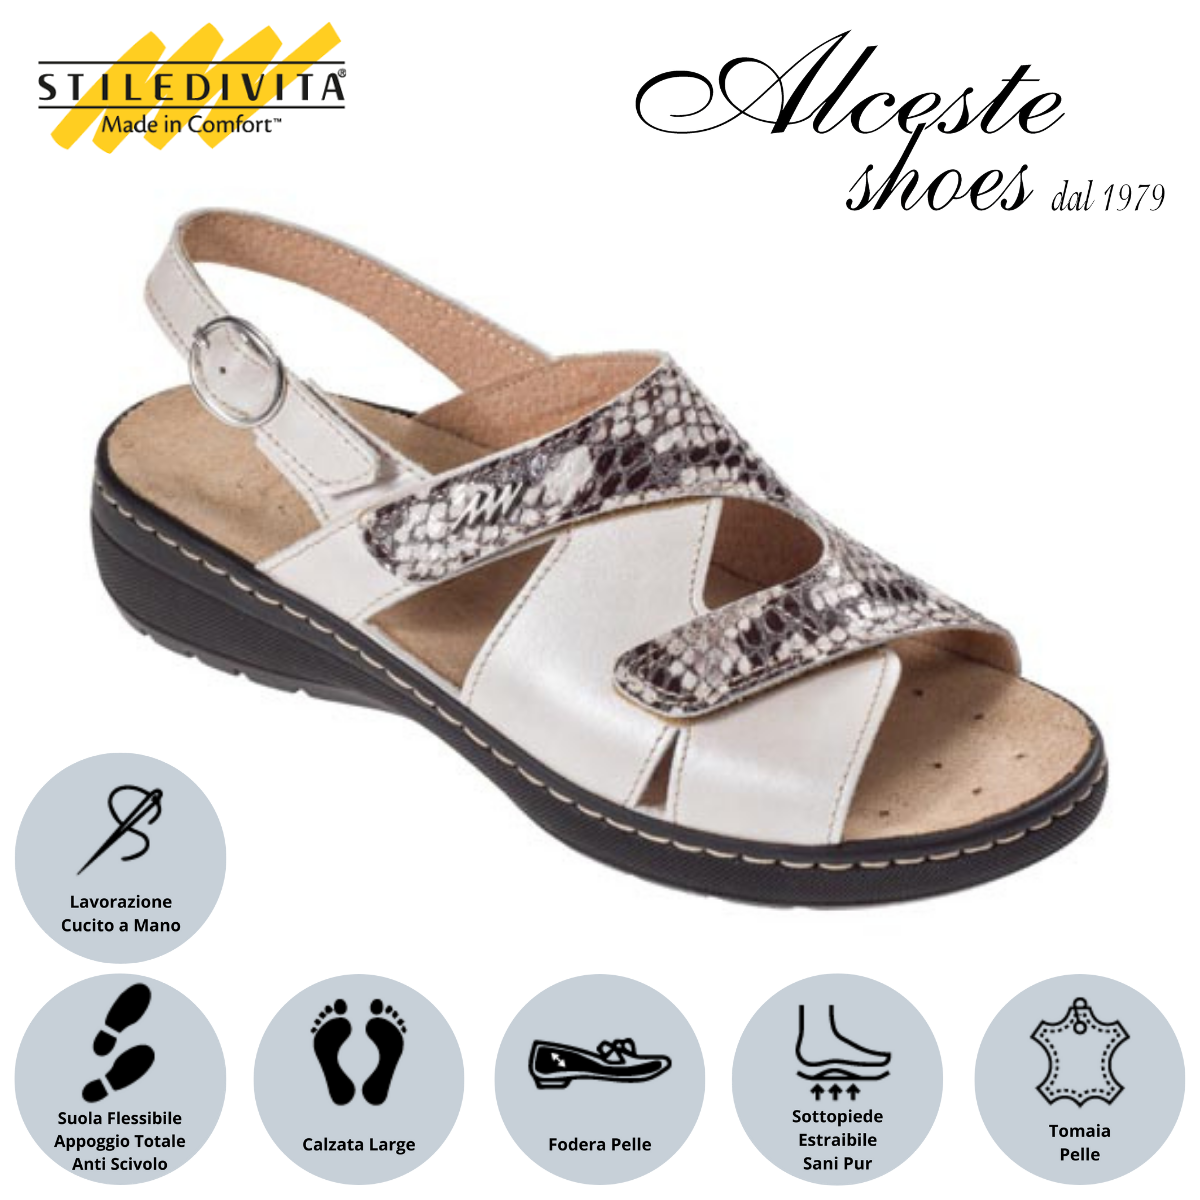 Sandalo con Strappi e Sottopiede Estraibile Stiledivita Art. 8195 Pelle Cipria e Stampa Pitone Roccia Alceste Shoes 11 3